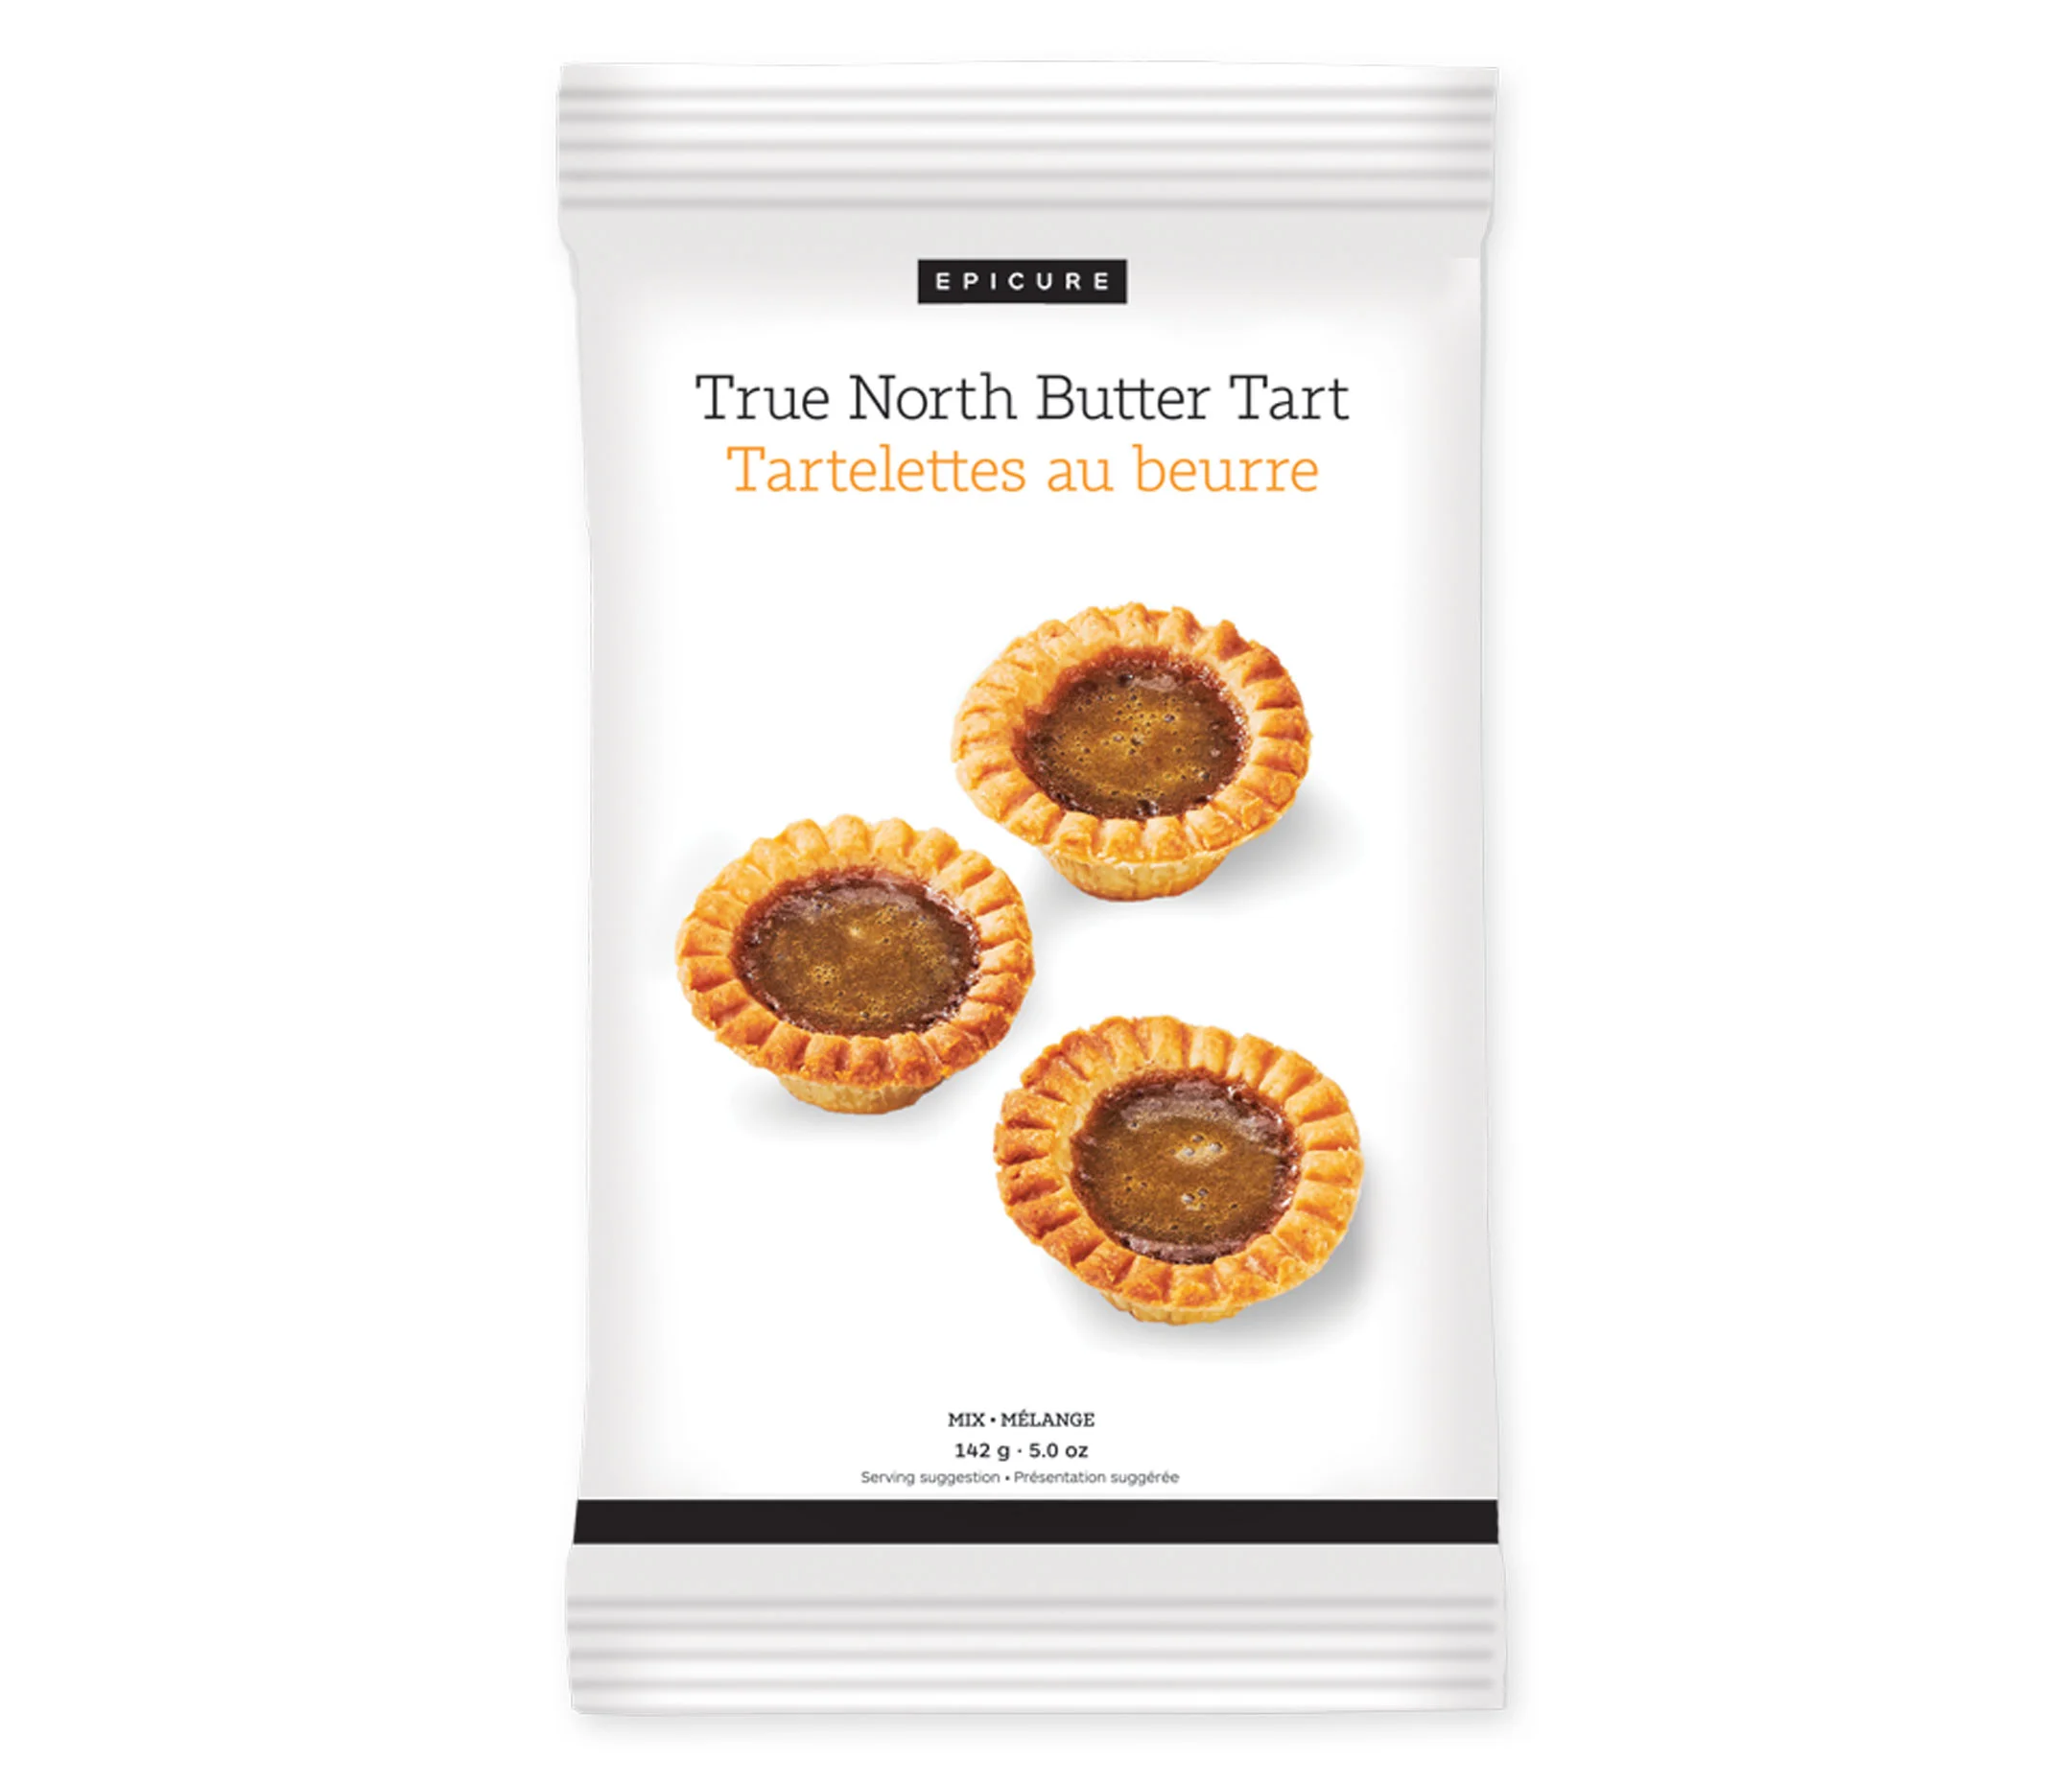 True North Butter Tart Mix (Pack of 2)